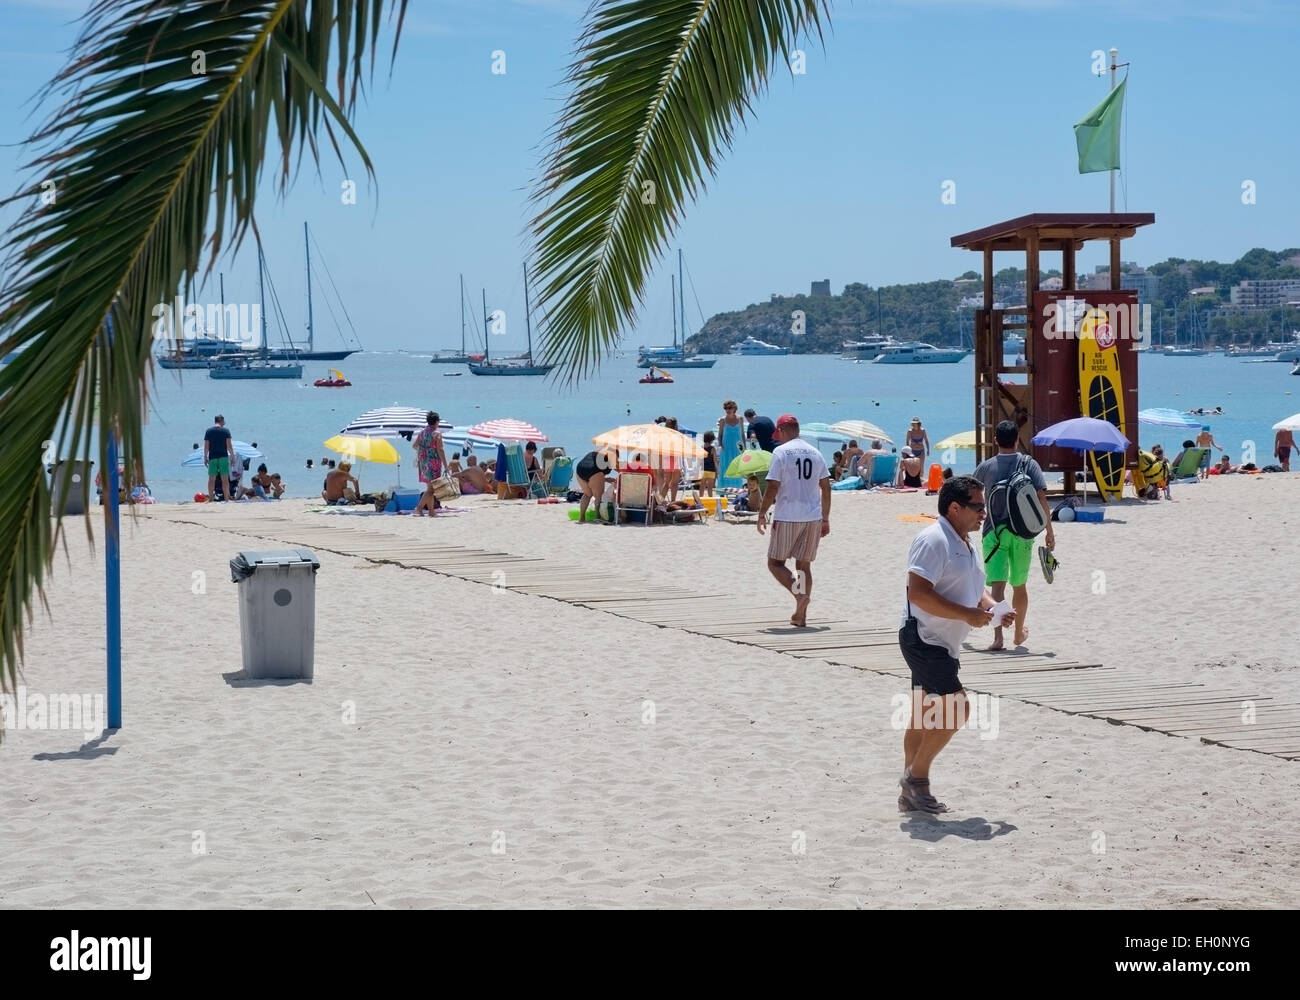 PALMA NOVA, Maiorca, isole Baleari, Spagna - Luglio 20, 2014: Spiaggia scena con turisti e lucertole da mare, barche ormeggiate in mare Foto Stock